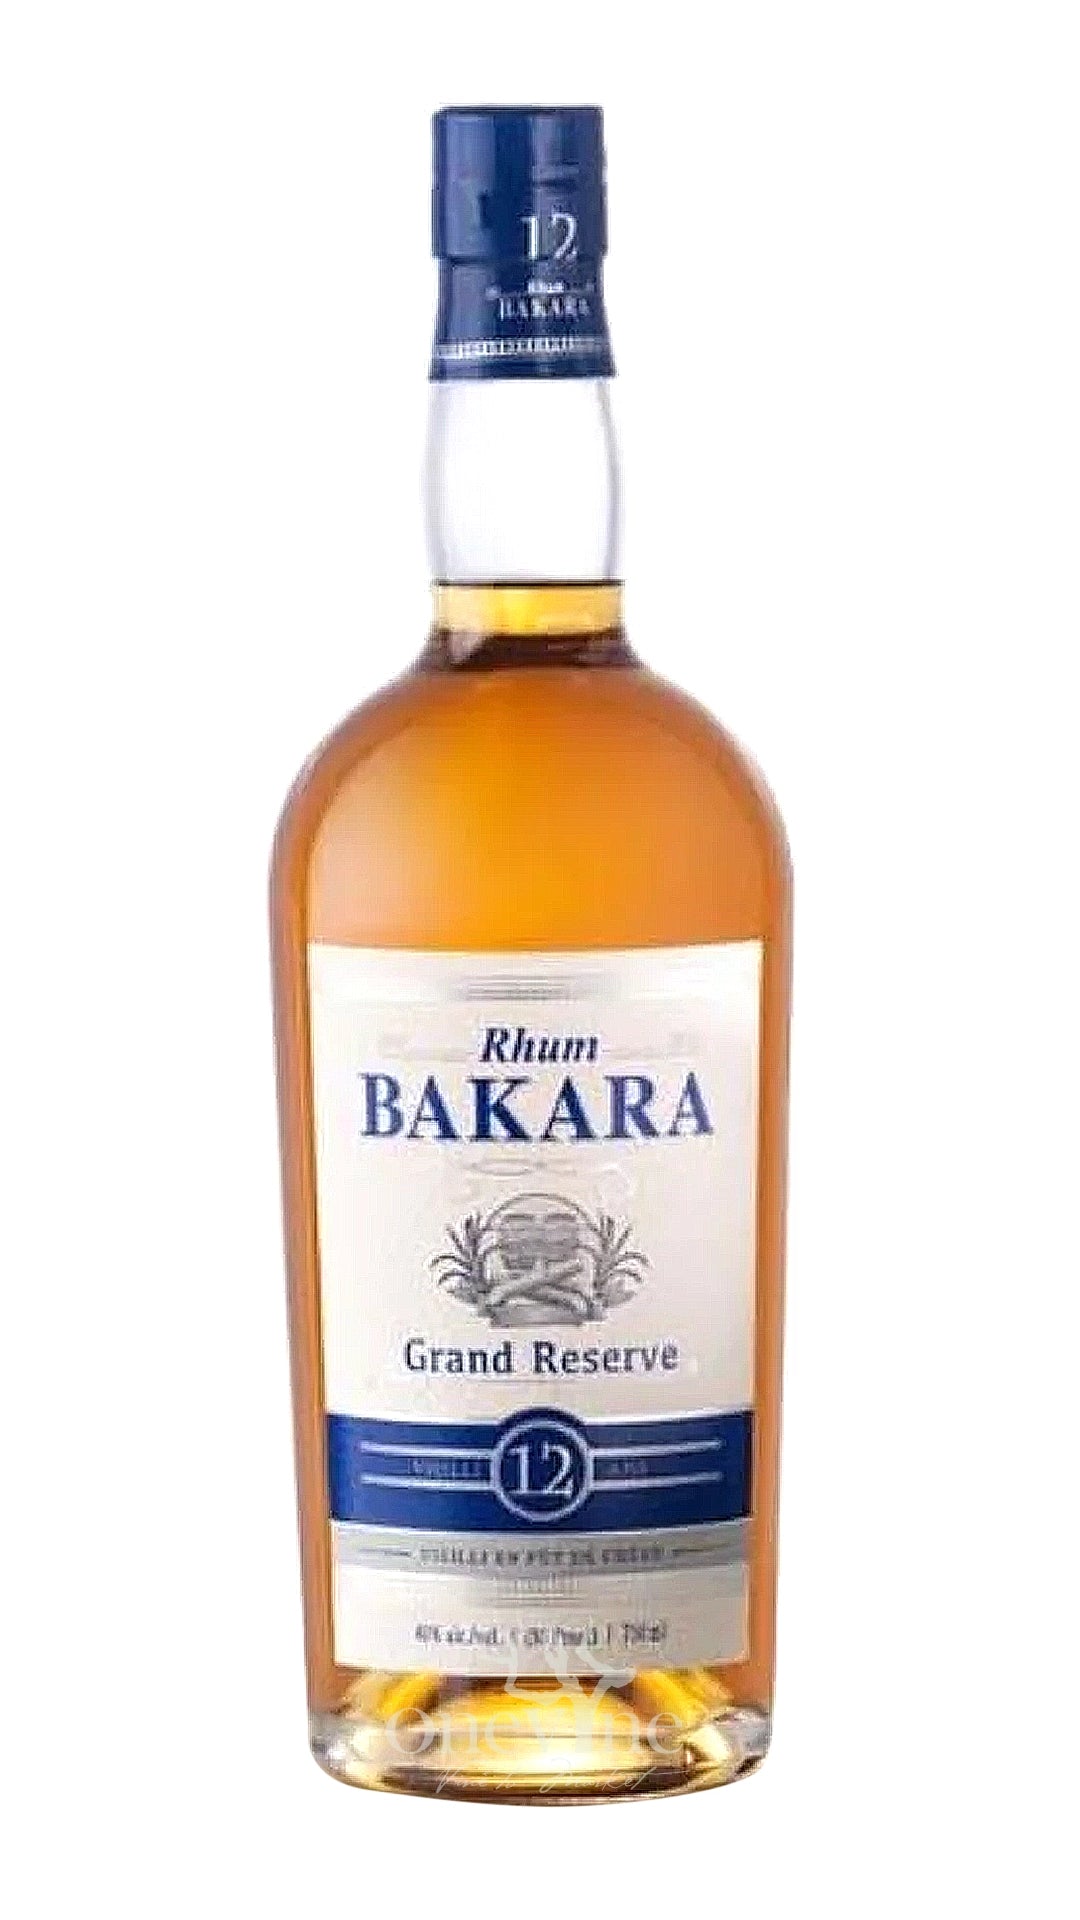 Bakara Grand Reserve Rum 12 Years